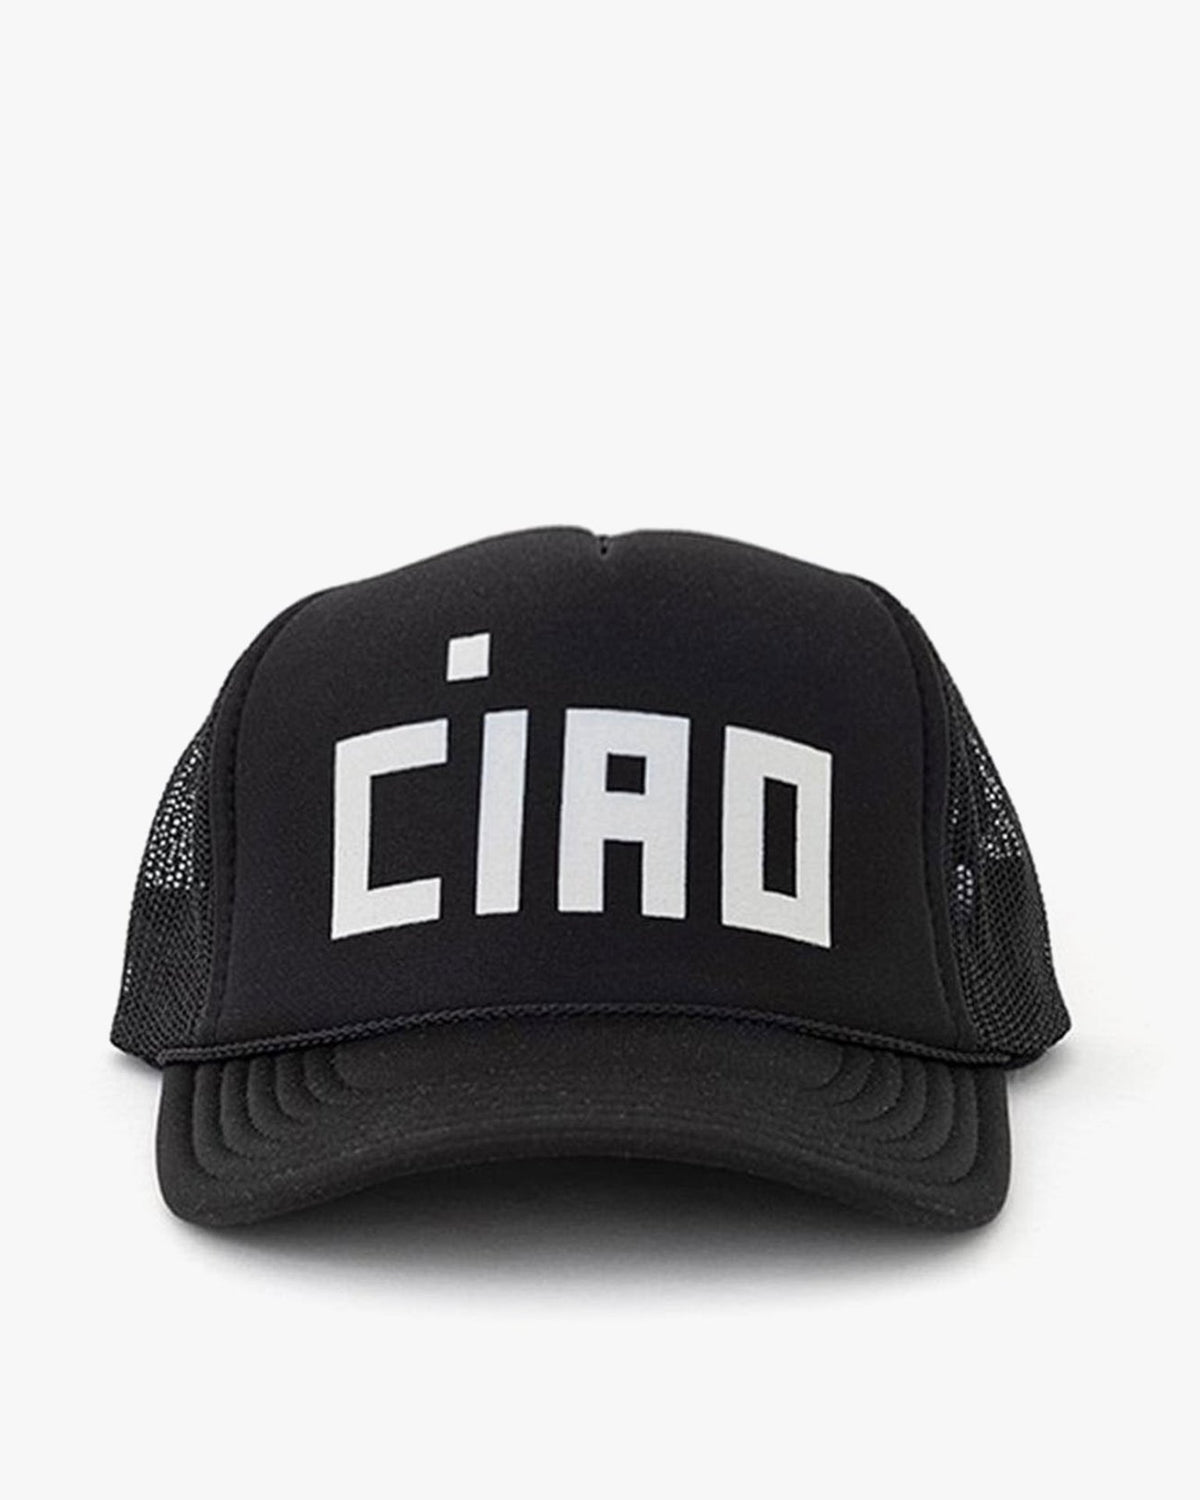 Clare V. Accessories Black Trucker Hat - Block Ciao - Black